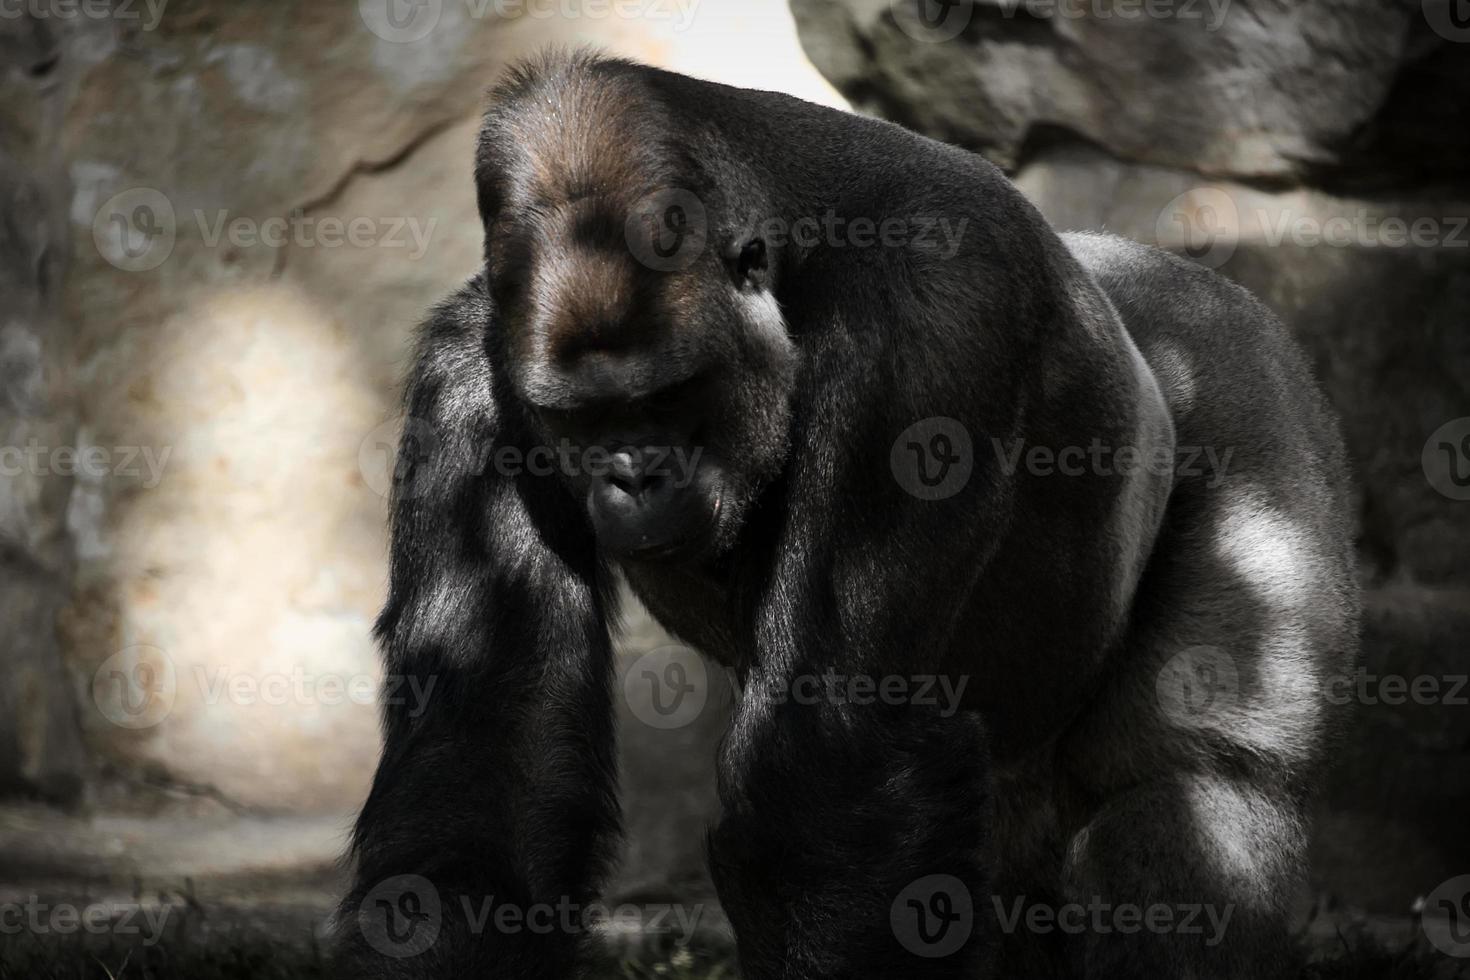 gorilla, dorso d'argento. la grande scimmia erbivora è imponente e forte. foto